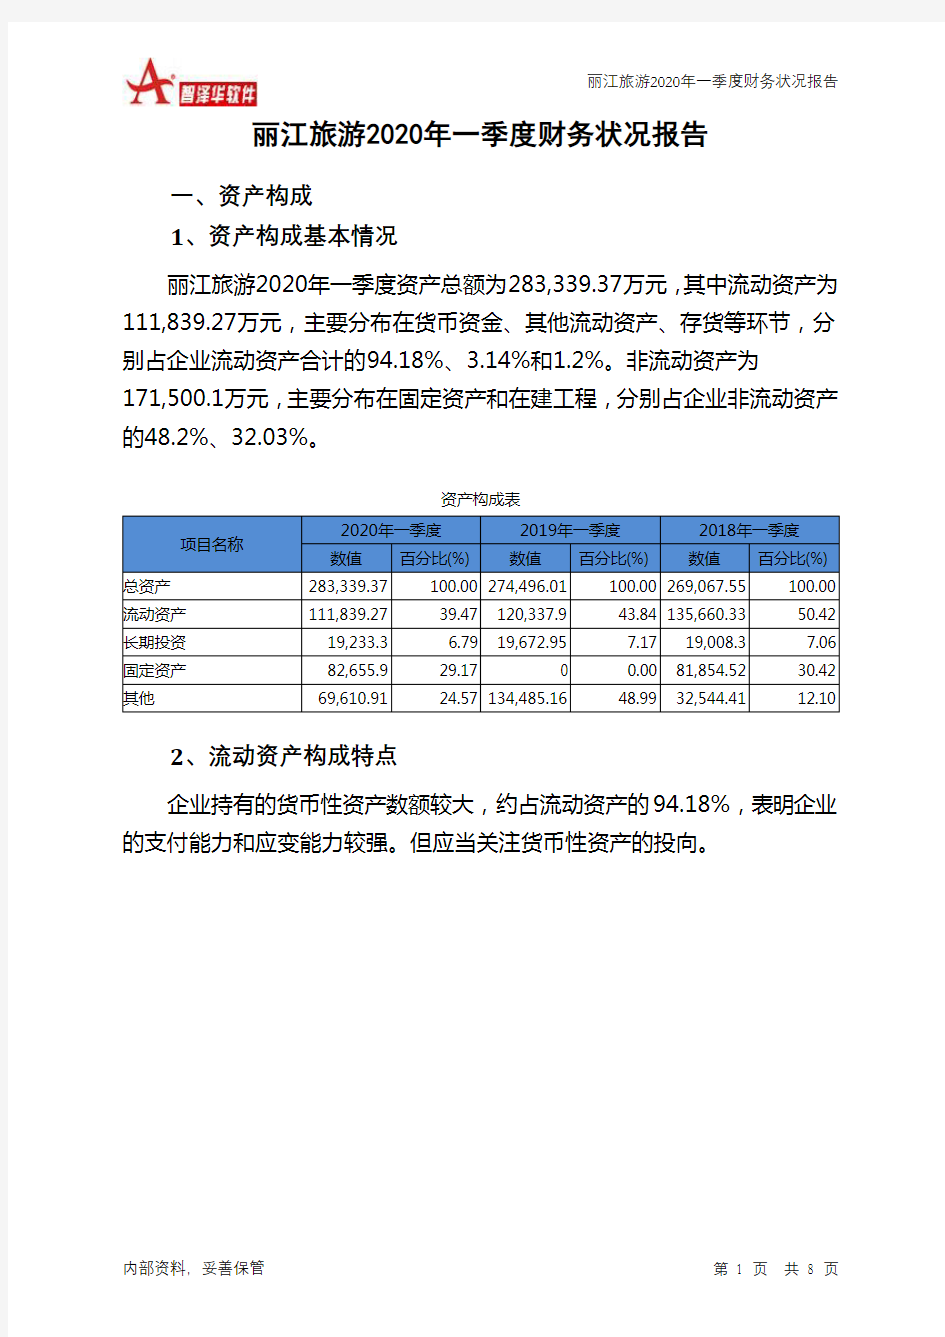 丽江旅游2020年一季度财务状况报告